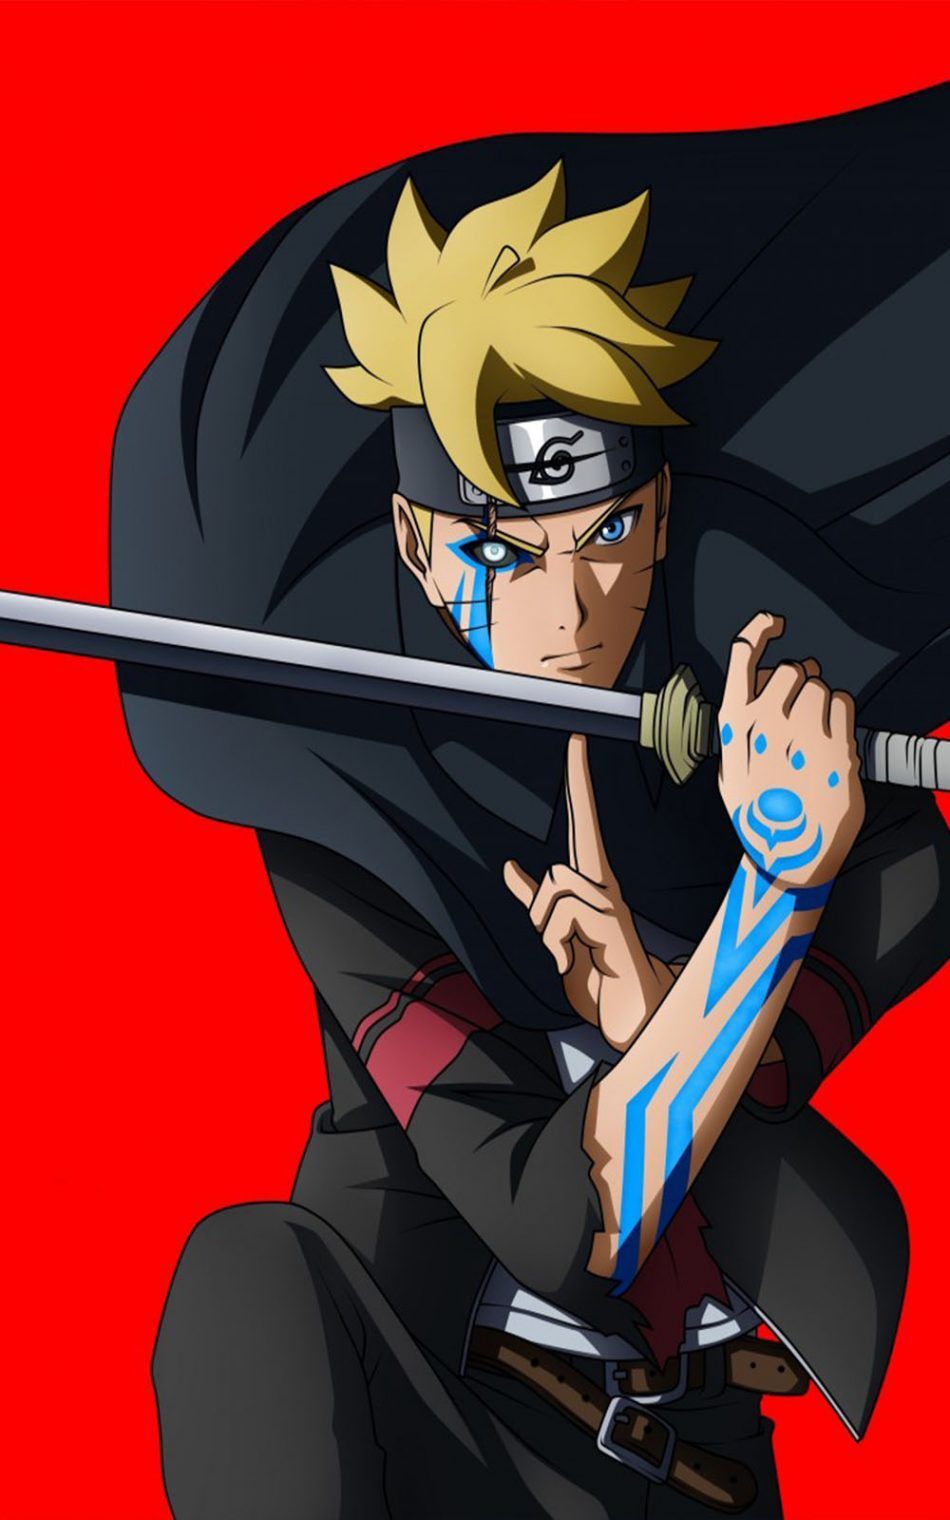 Wallpaper Naruto And Boruto di 2020